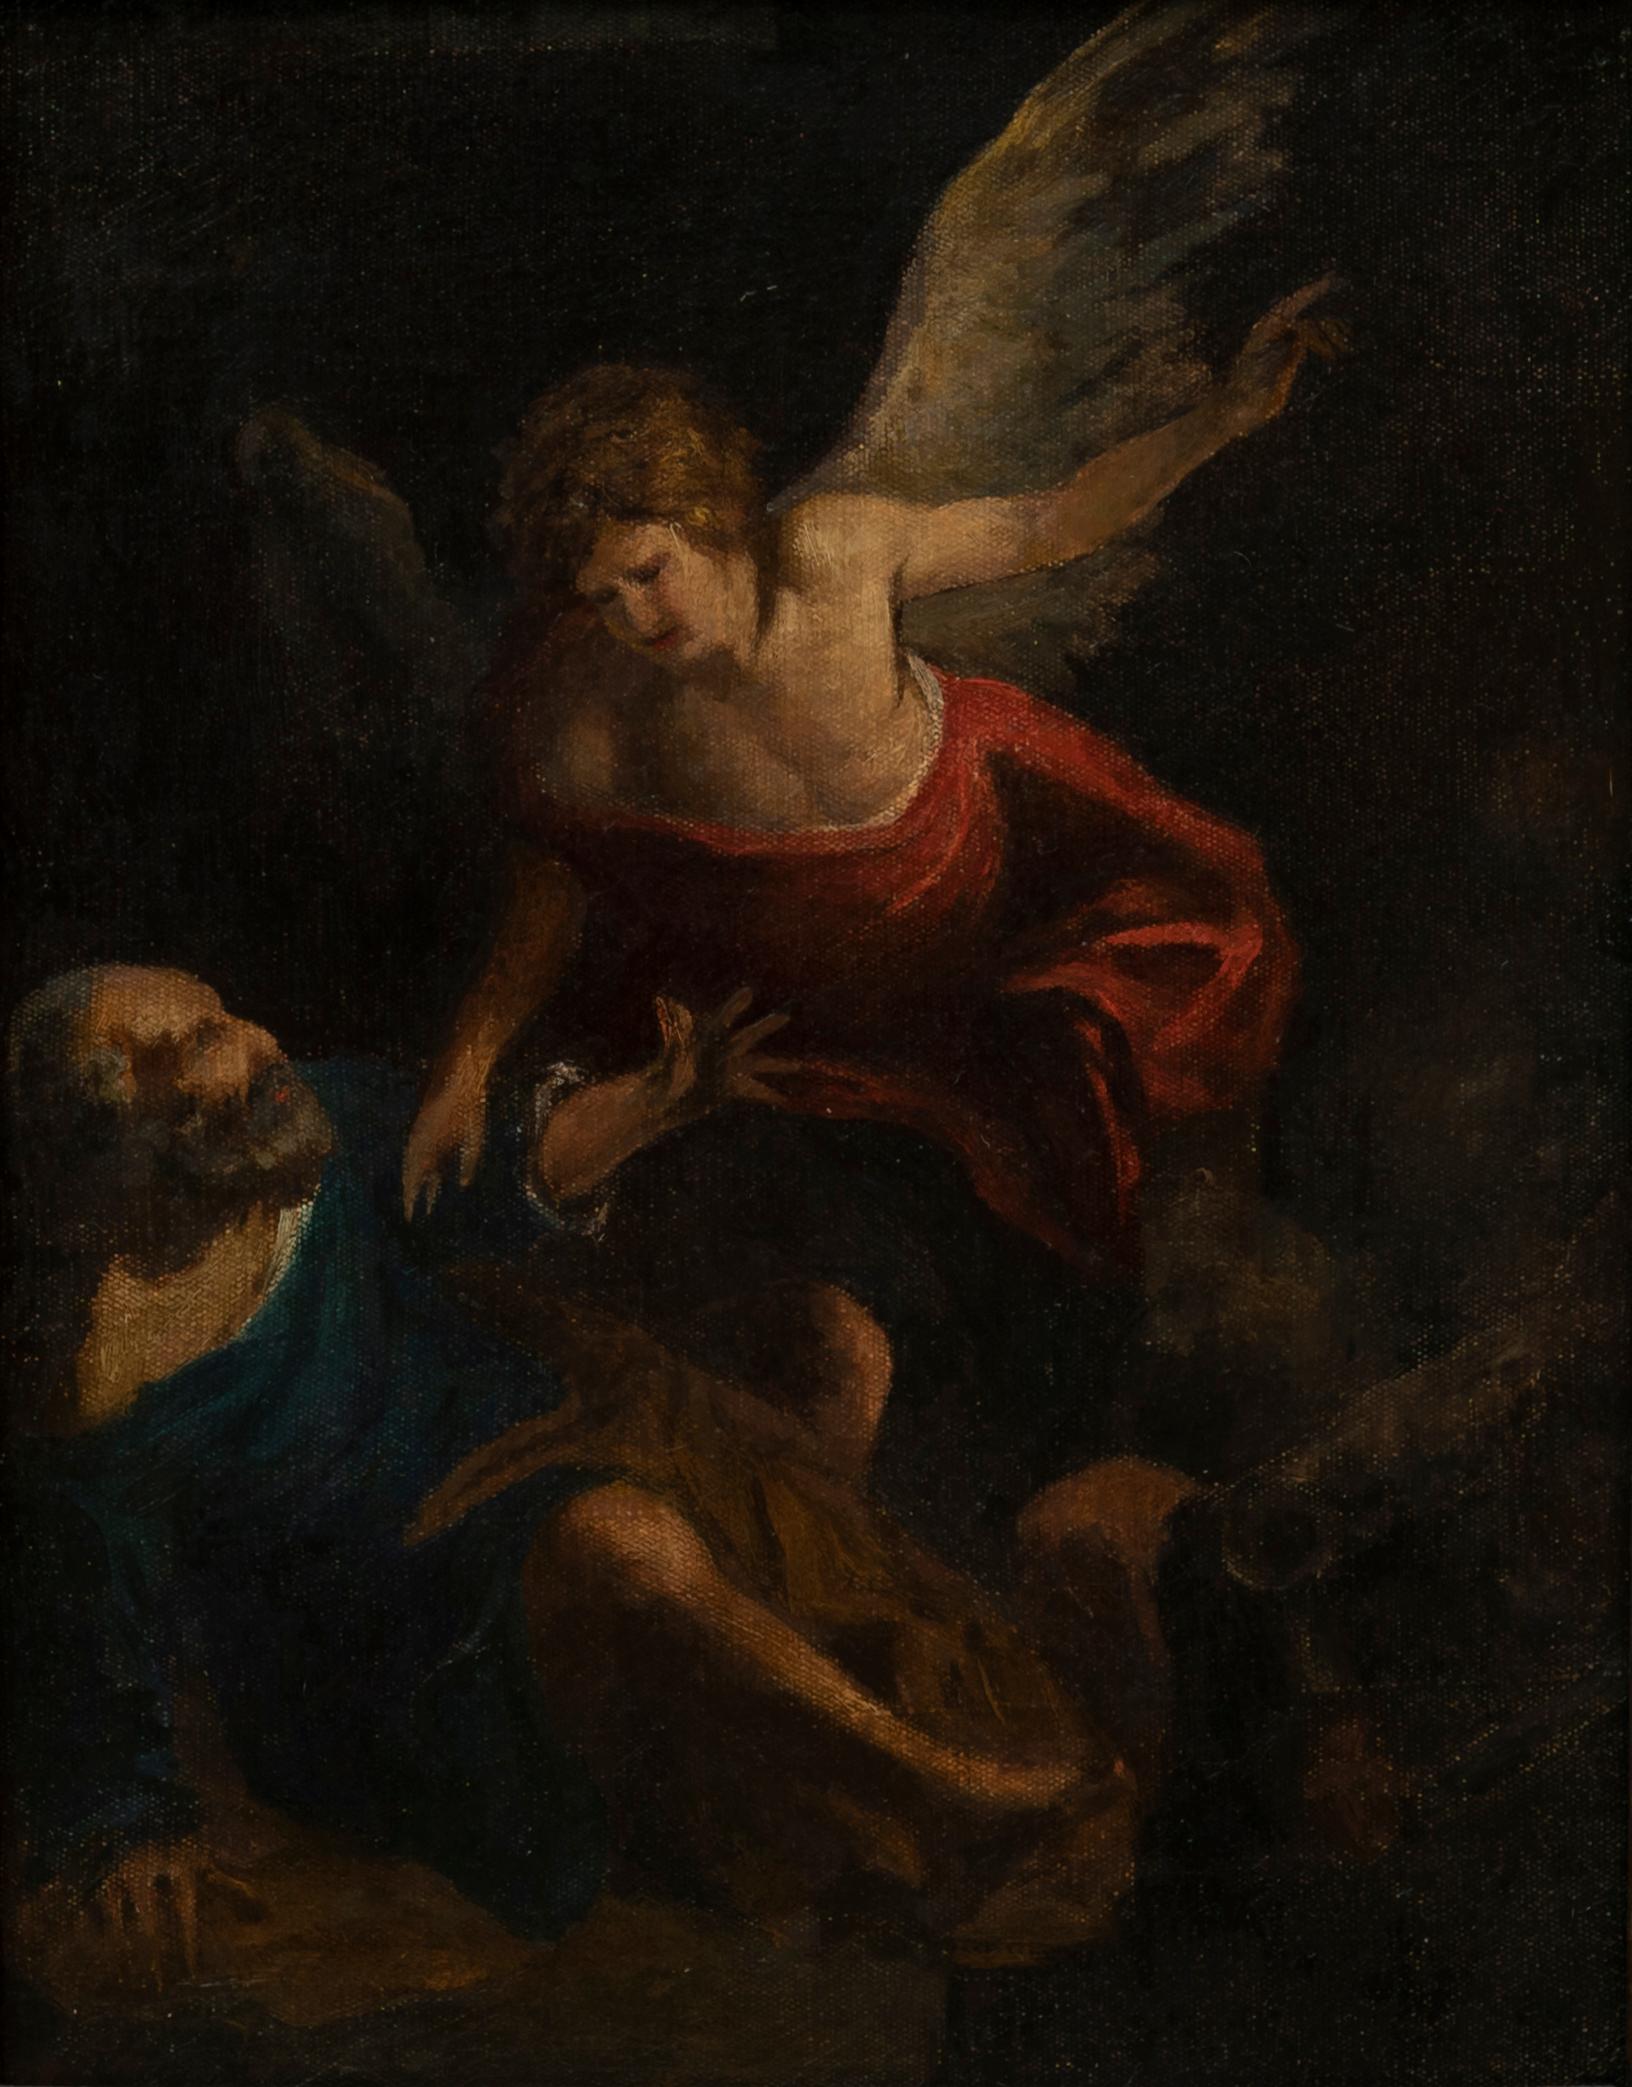 Importante peinture à l'huile sur toile représentant Saint Peters en prison libéré par l'Ange.
L'original est conservé à la Galerie régionale du Palazzo Abatellis à Palerme. 
Elle provient de l'église San Pietro in Vincoli, aujourd'hui disparue, qui